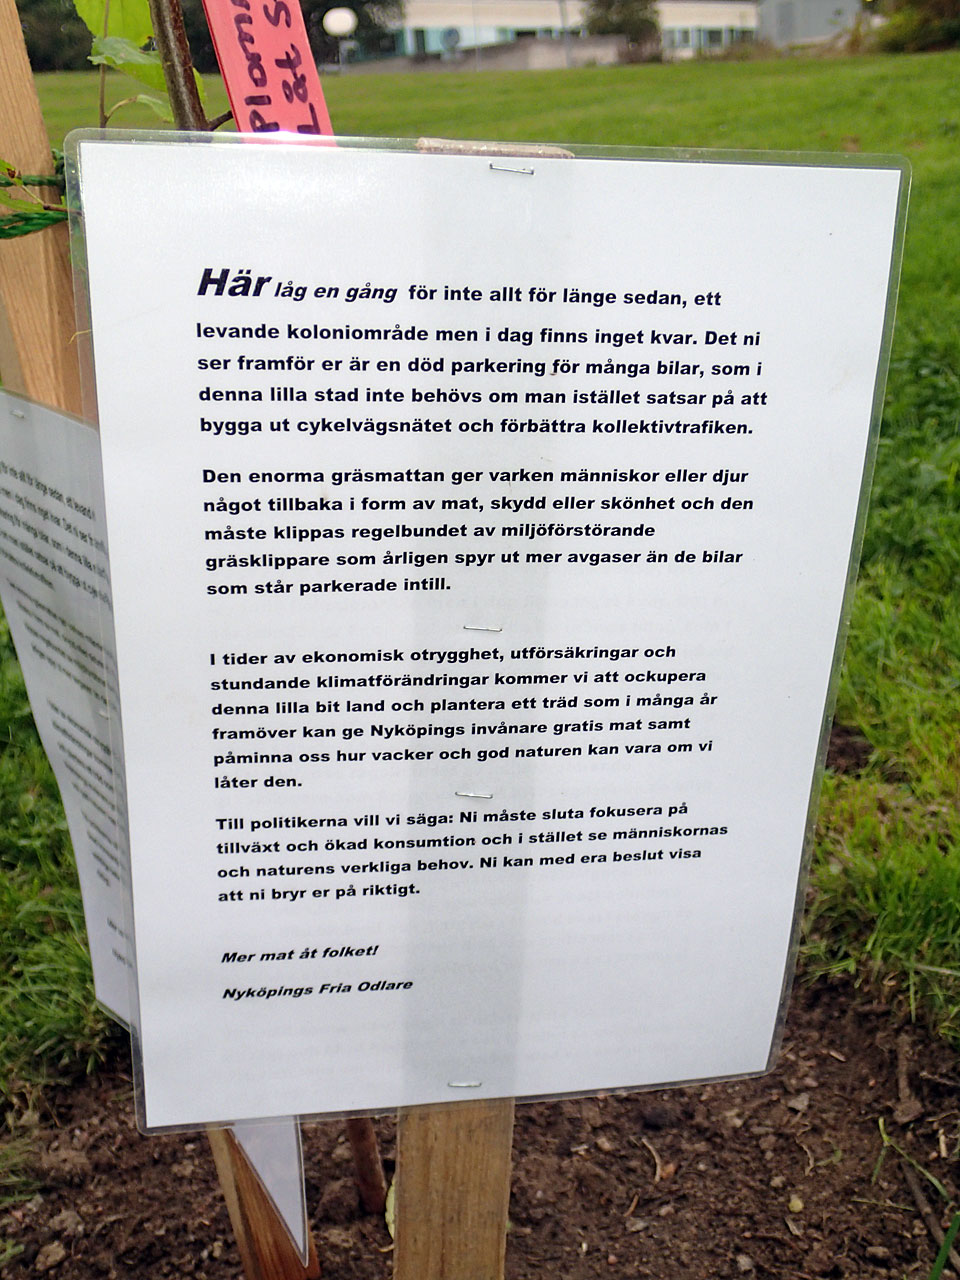 Bilden visar skyltens text, som avslutas med: Mer mat åt folket! Nyköpings Fria Odlare 